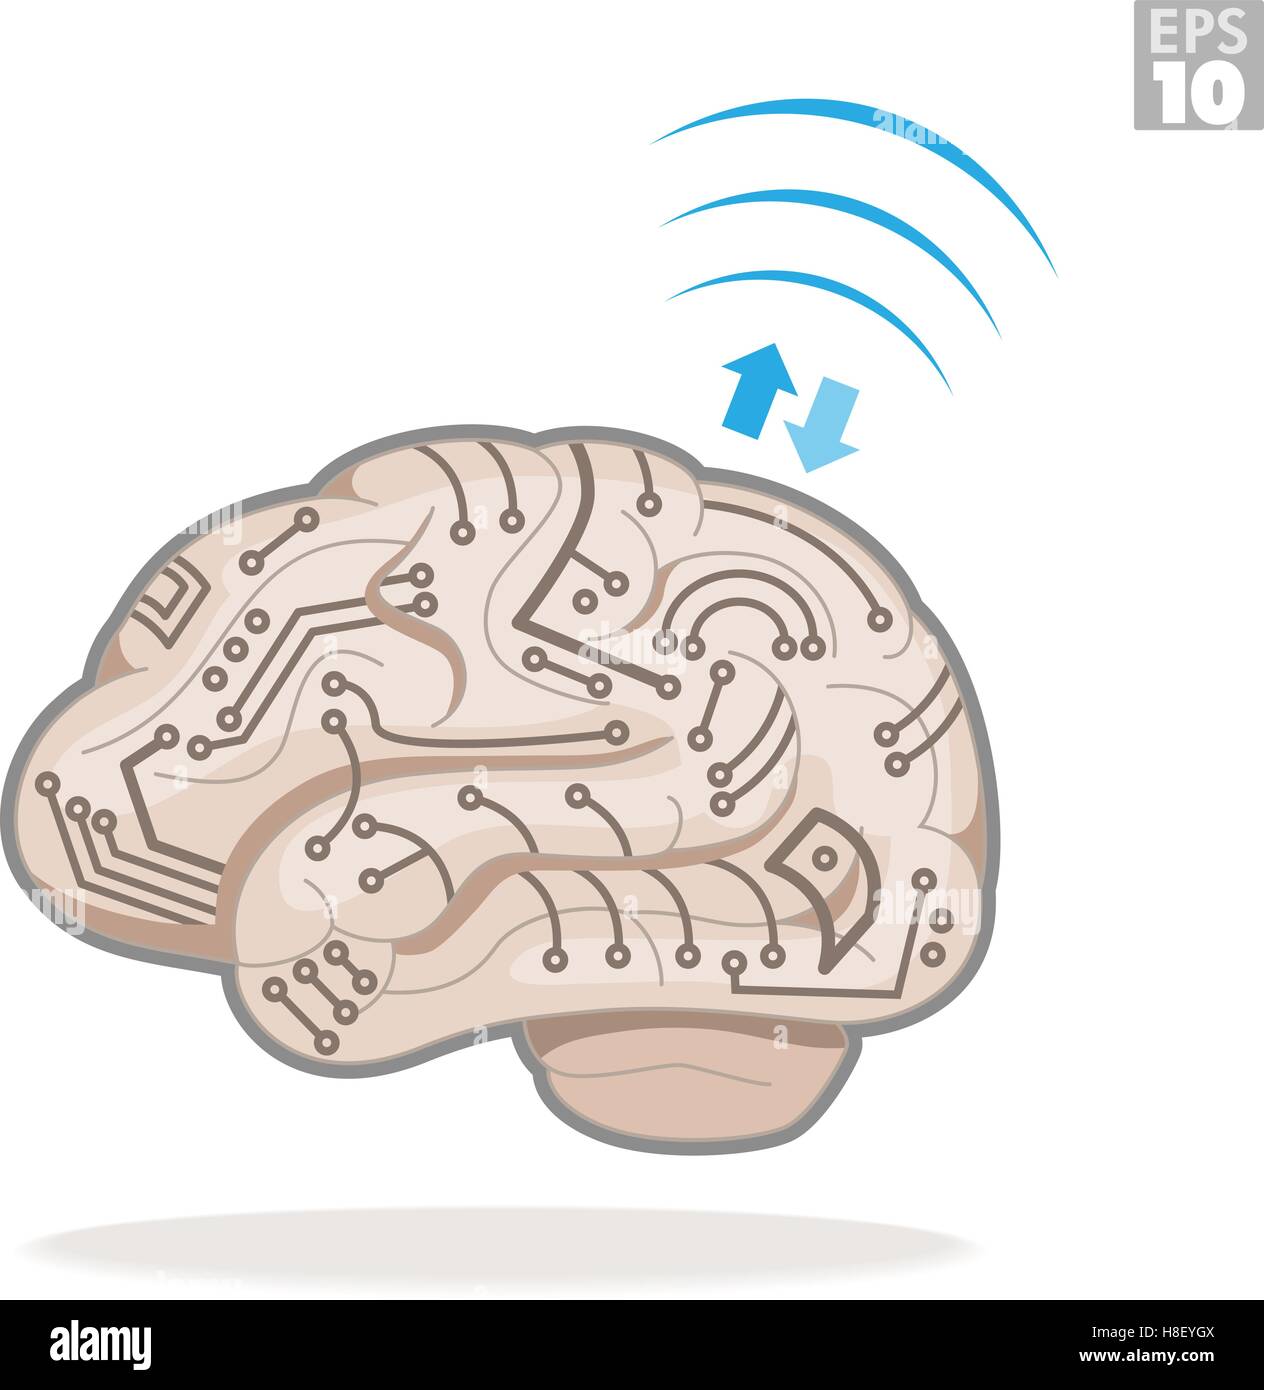 Cerveau humain avec les circuits électroniques, le traitement de l'information et de transférer des données sans fil. Illustration de Vecteur